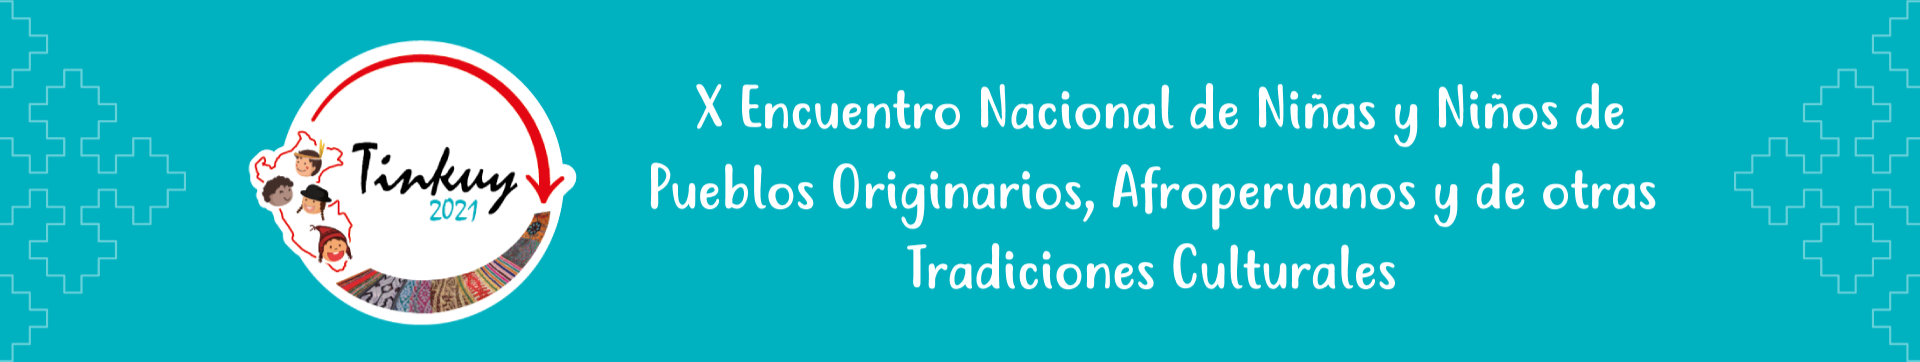 Banner X Encuentro Nacional de Niñas y Niños de Pueblos Originarios, Afroperuanos y de otras Tradiciones Culturales